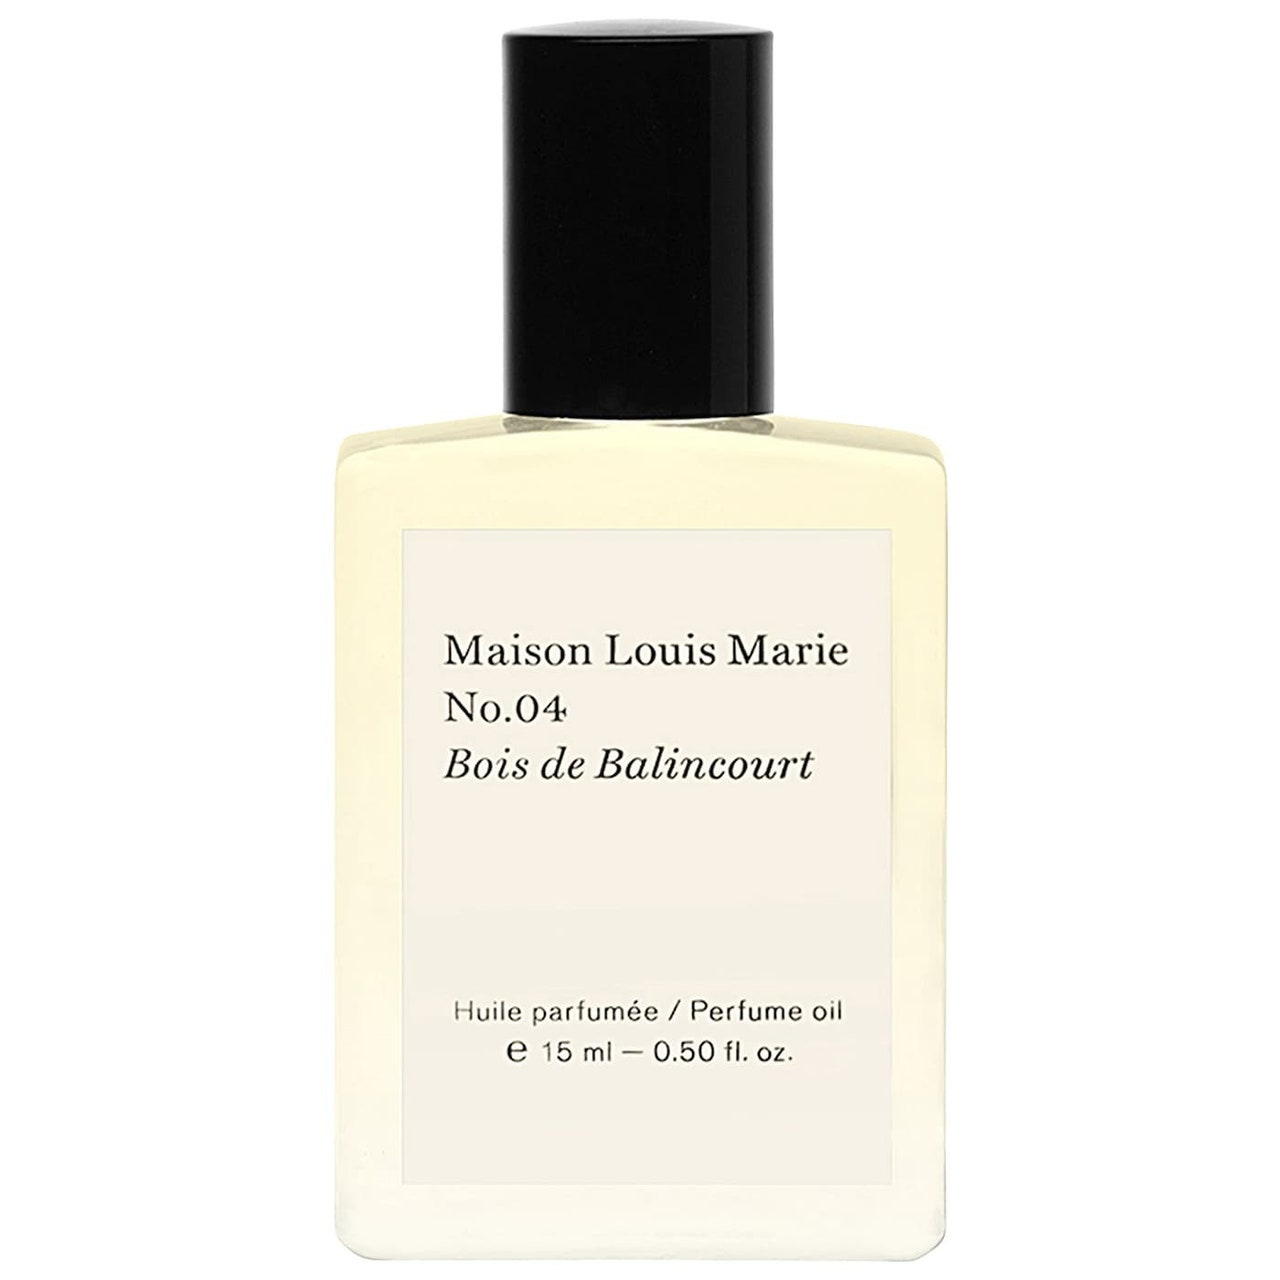 Maison Louis Marie No.04 Bois de Balincourt Parfümöl, quadratische Flasche hellgelbes Parfümöl mit schwarzer Kappe auf weißem Hintergrund